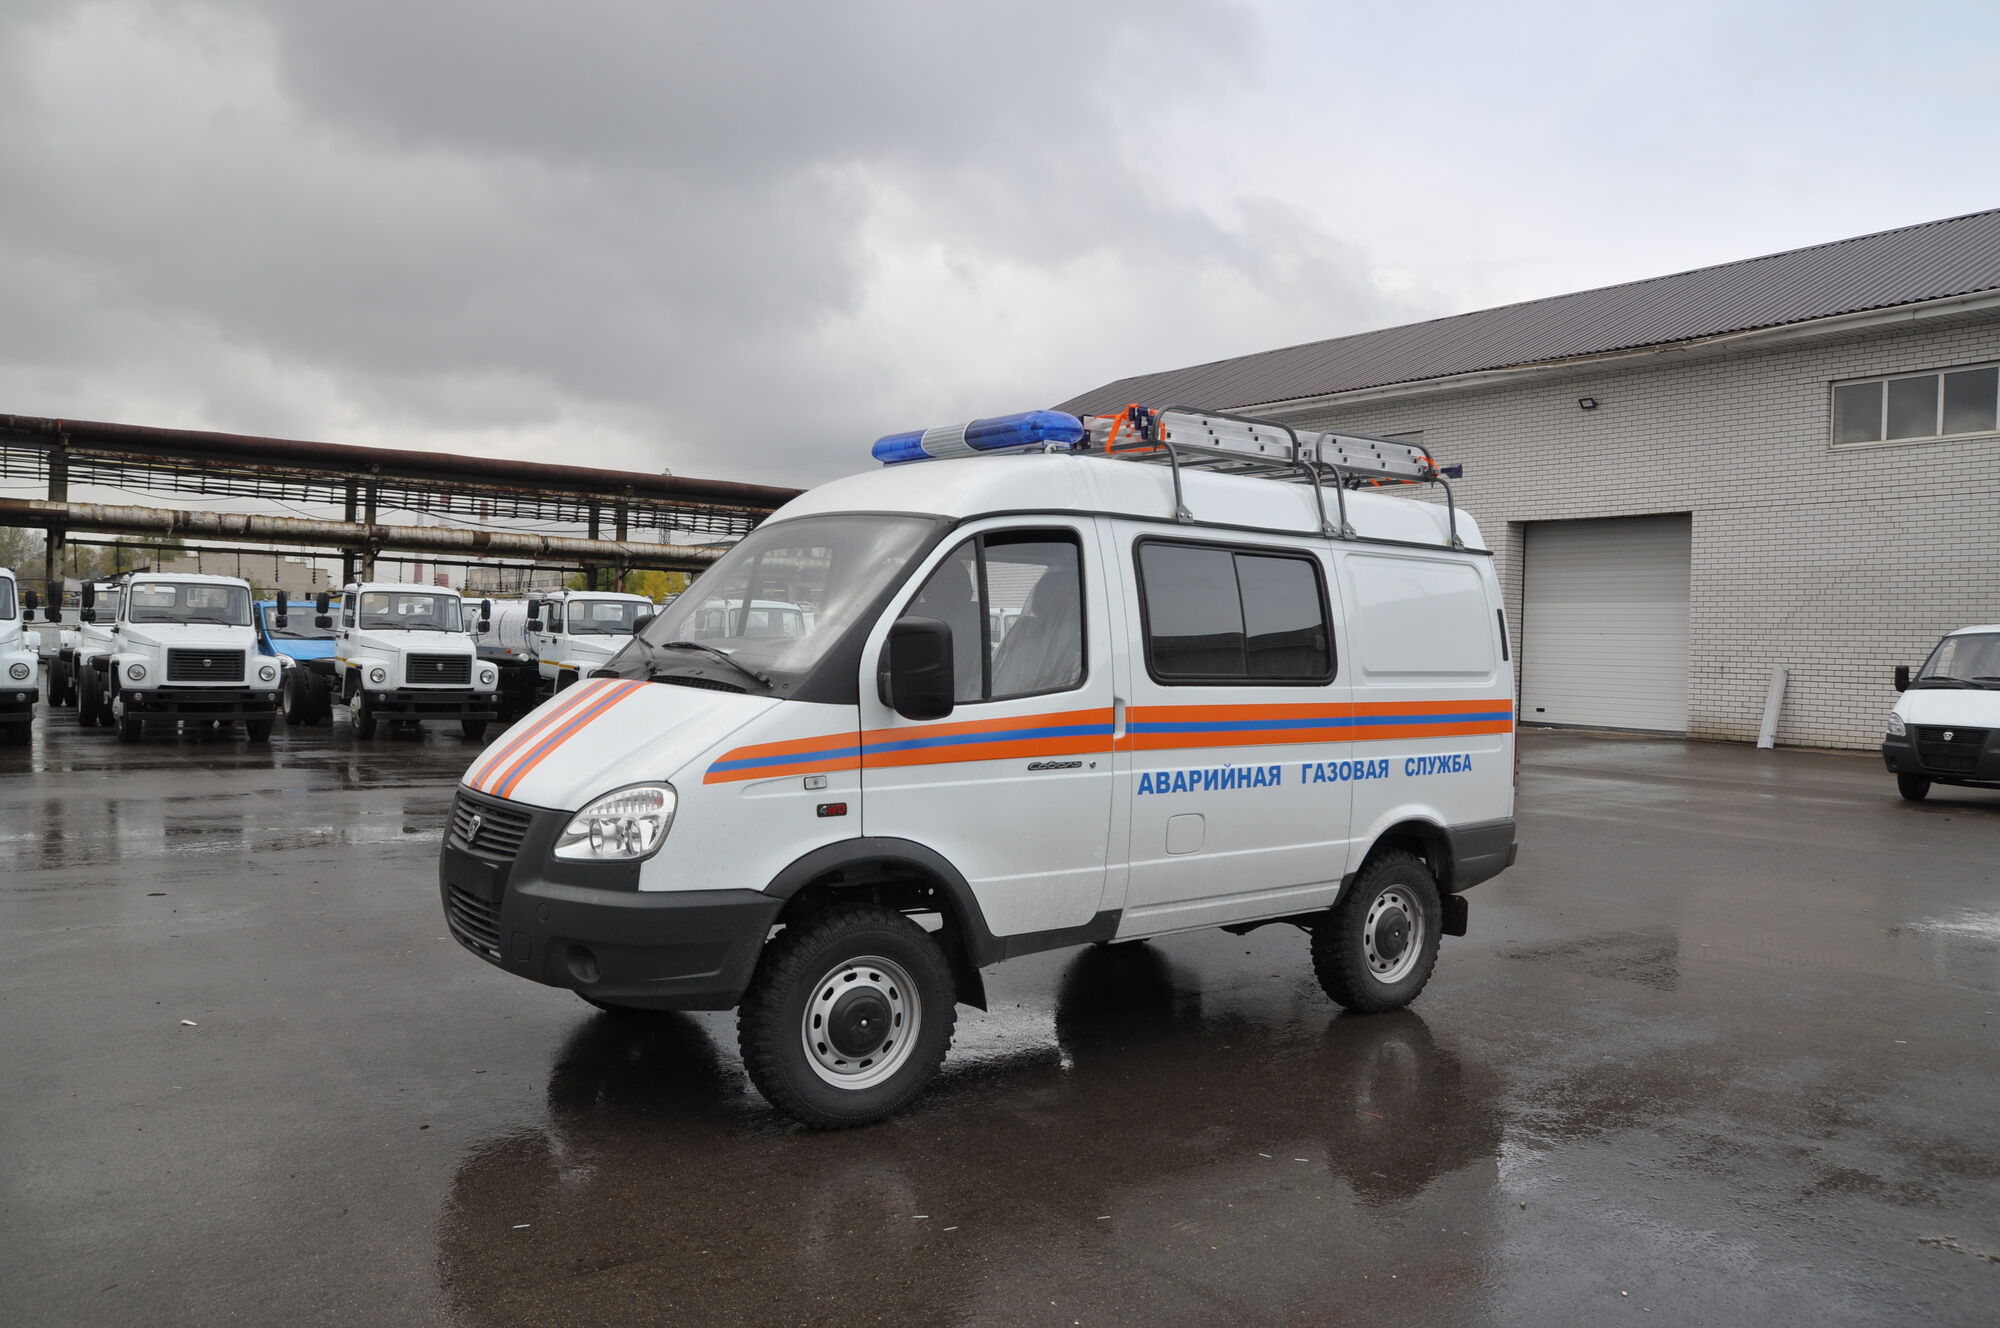 Автомобиль аварийной газовой службы на базе ГАЗ 27527 Соболь